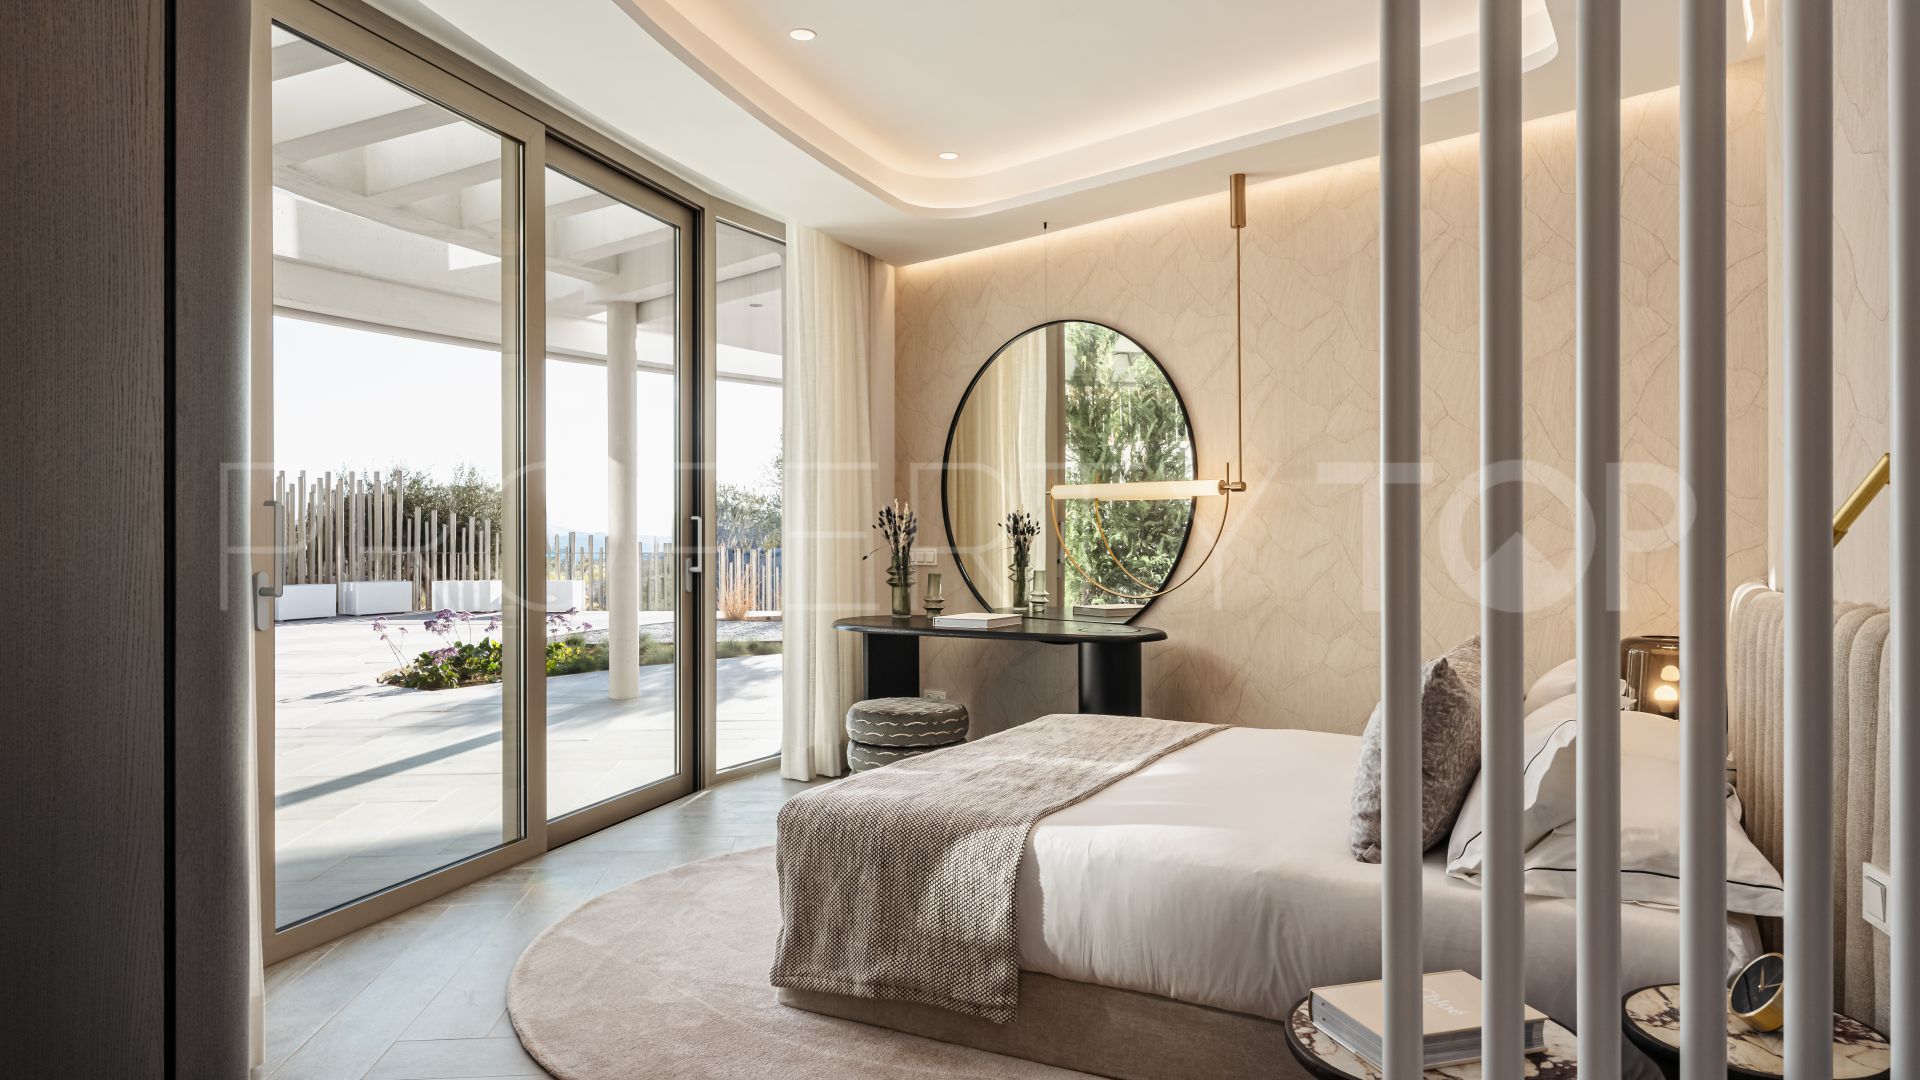 The View Marbella, apartamento planta baja en venta con 3 dormitorios